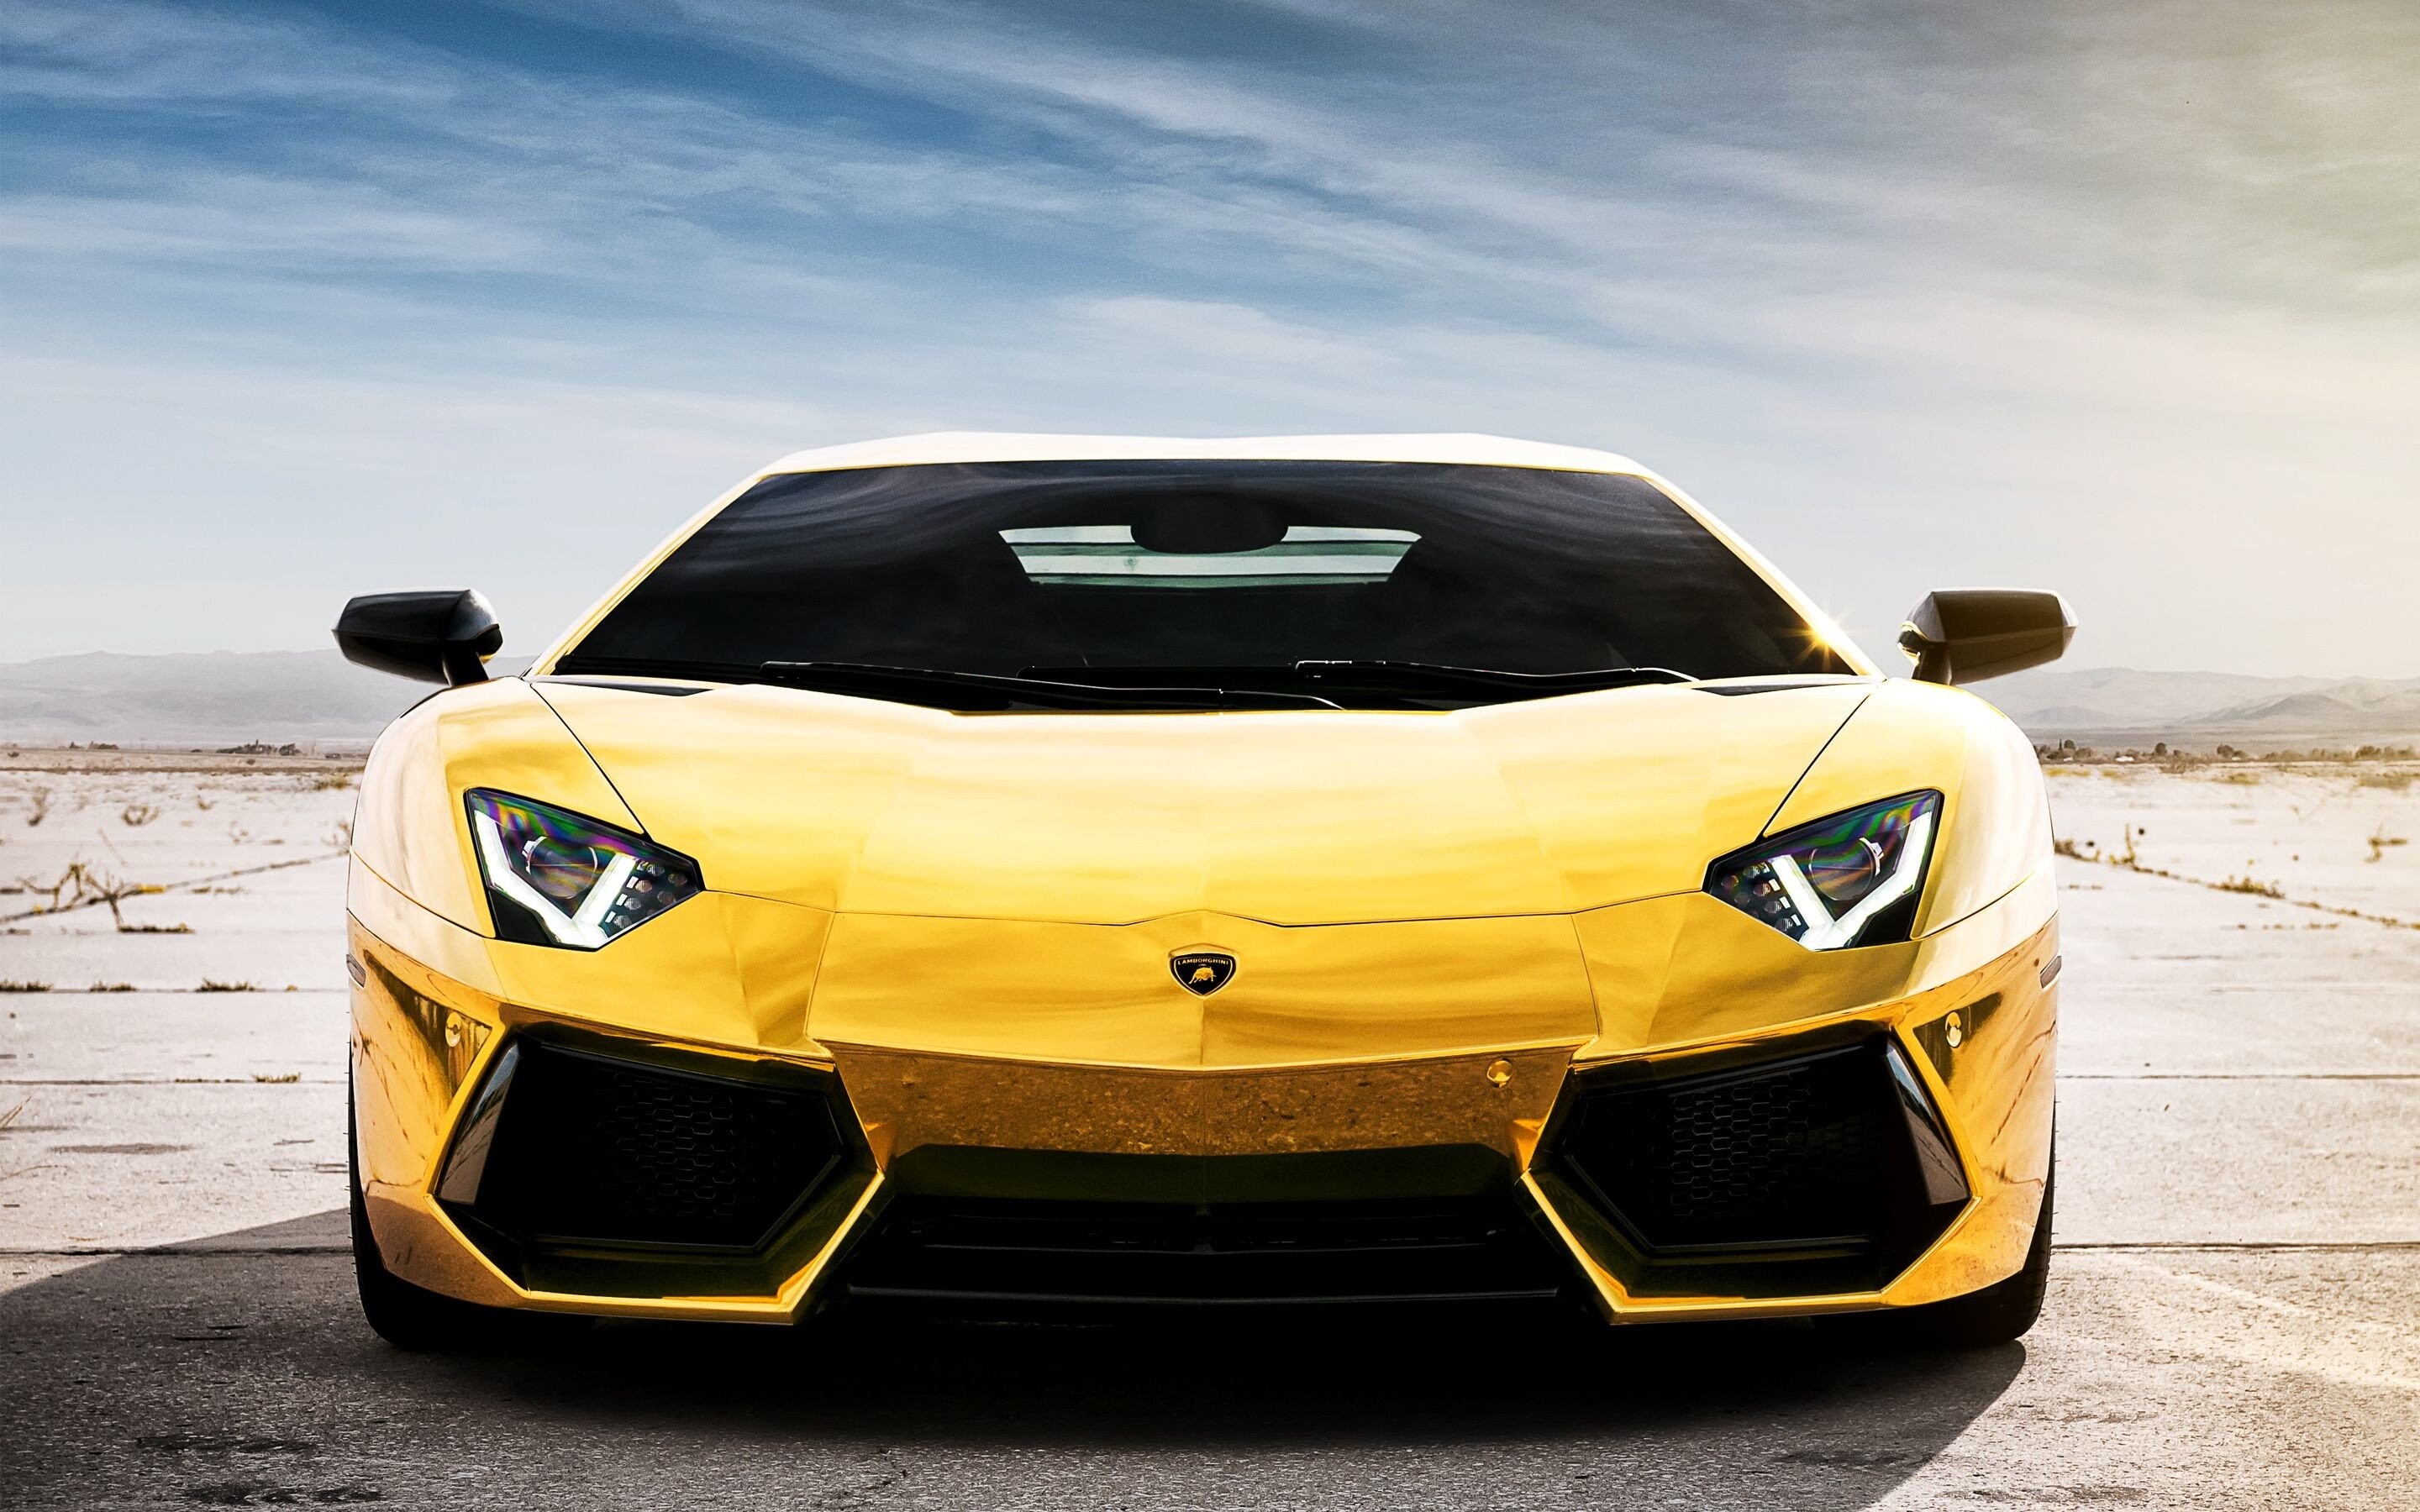 Gold Lamborghini: Aventador LP 700-4, The first iteration designed by Filippo Perini. 2880x1800 HD Wallpaper.